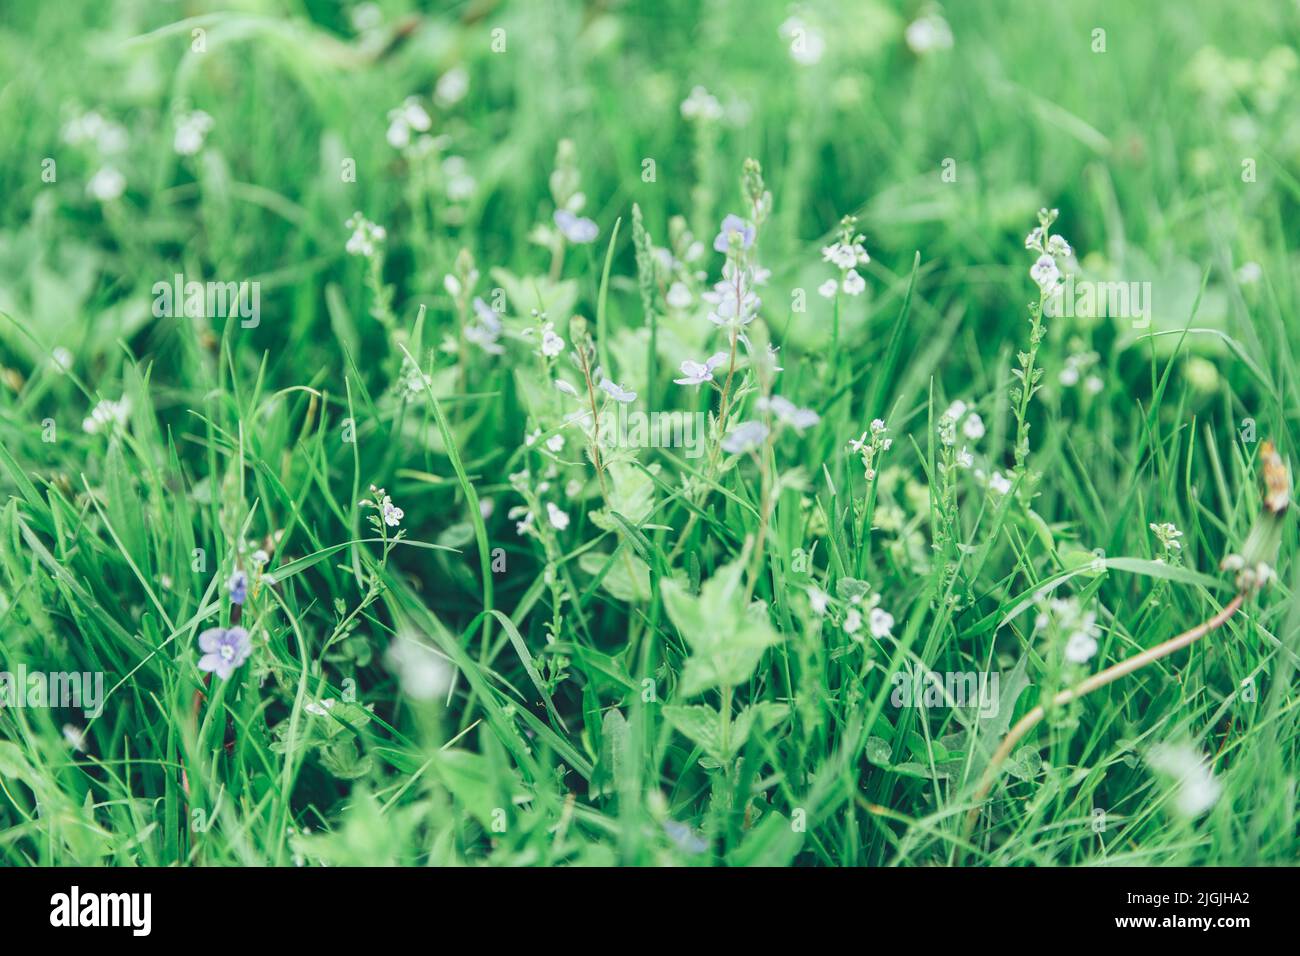 Grünes Gras Textur als Hintergrund. Perspektivische Ansicht und selektiver Fokus. Künstlerische abstrakte Frühling oder Sommer Hintergrund mit frischem Gras als Banner oder Stockfoto